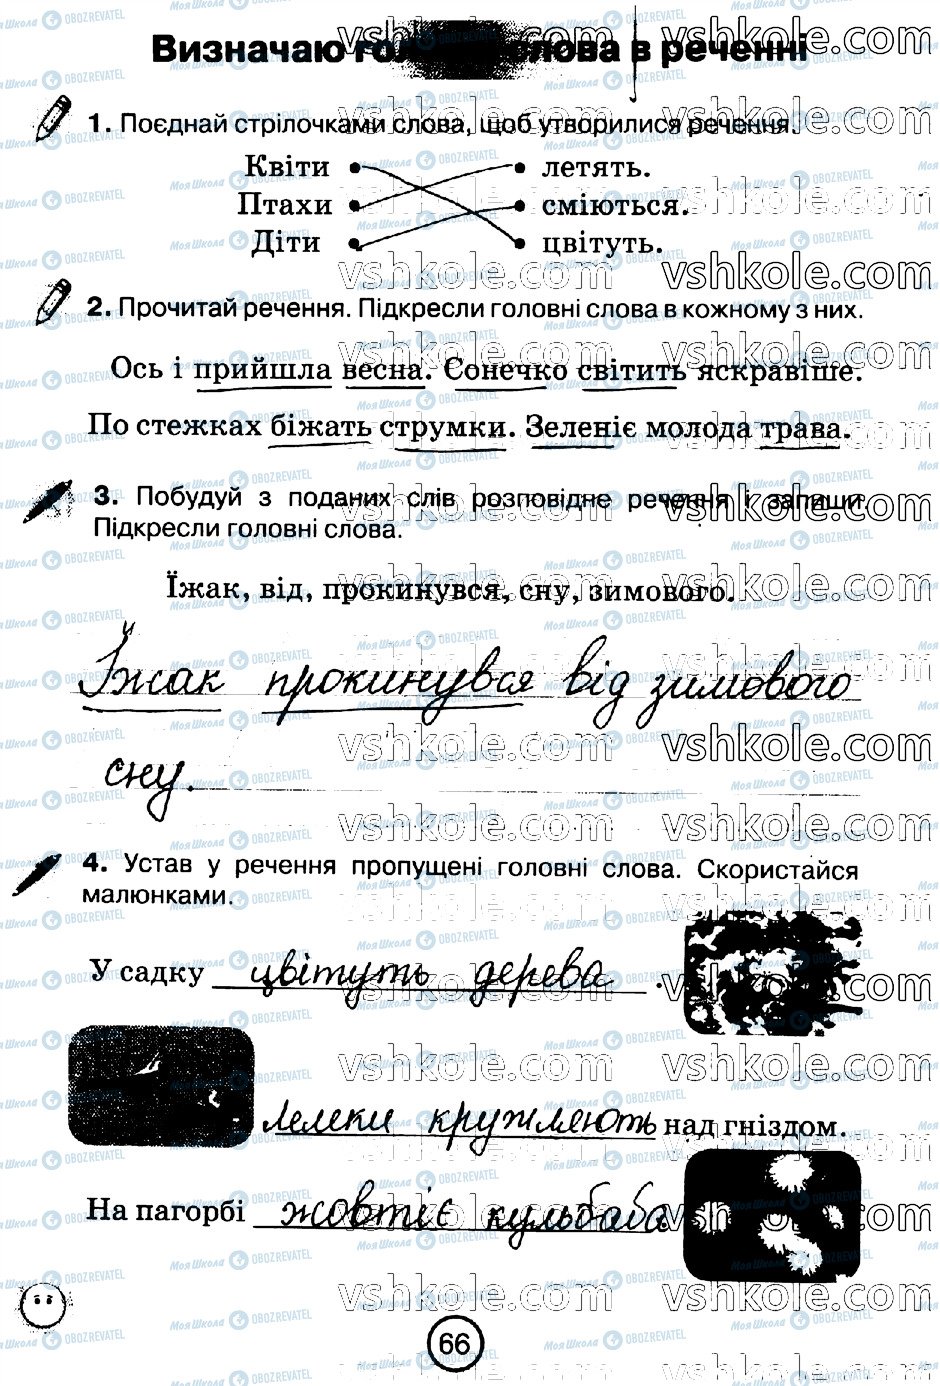 ГДЗ Укр мова 2 класс страница стр66